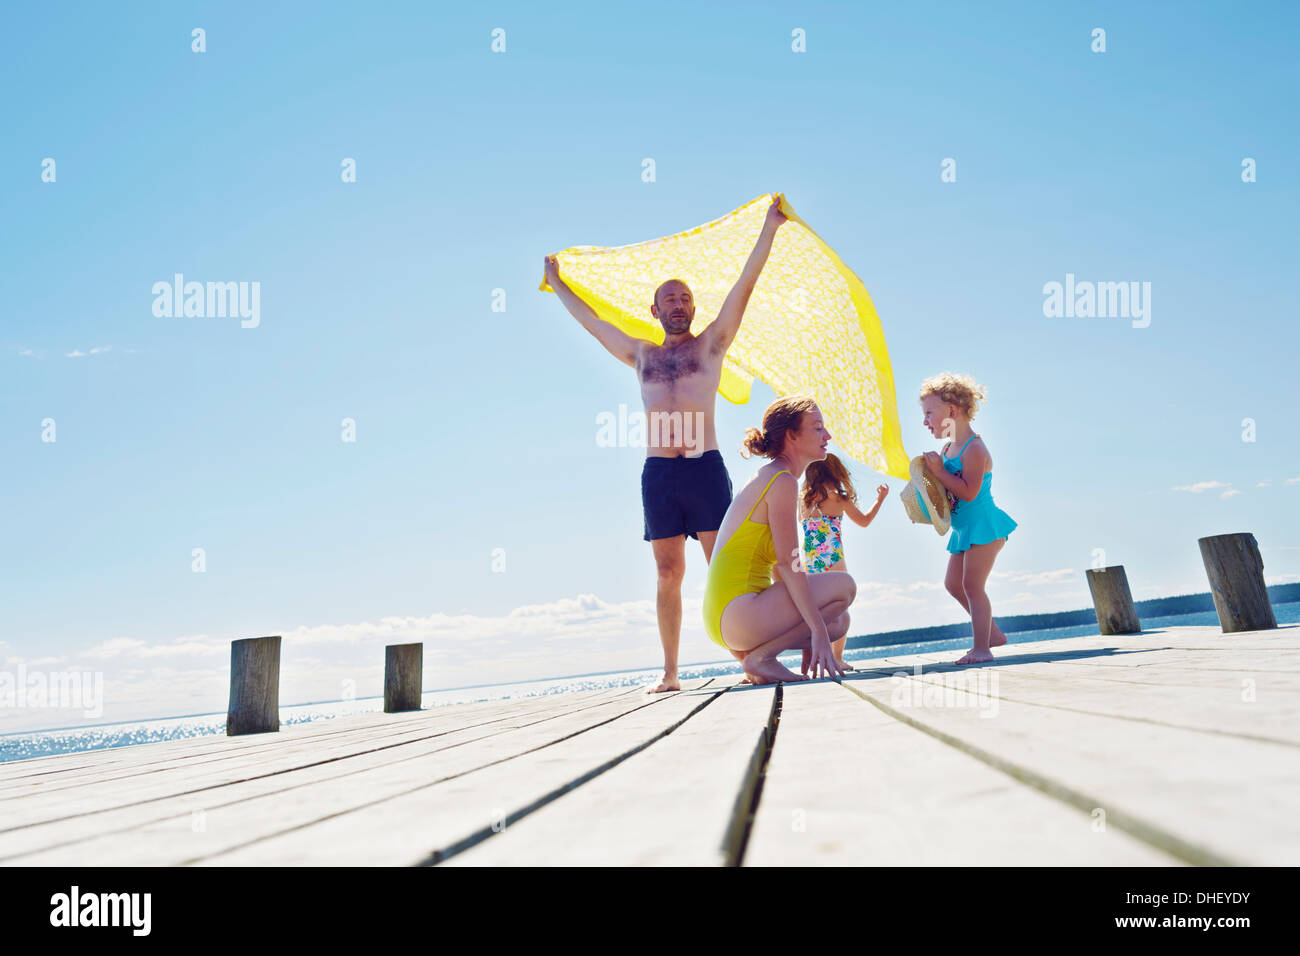 Junge Familie auf Pier, Utvalnas, Hotels, Schweden Stockfoto